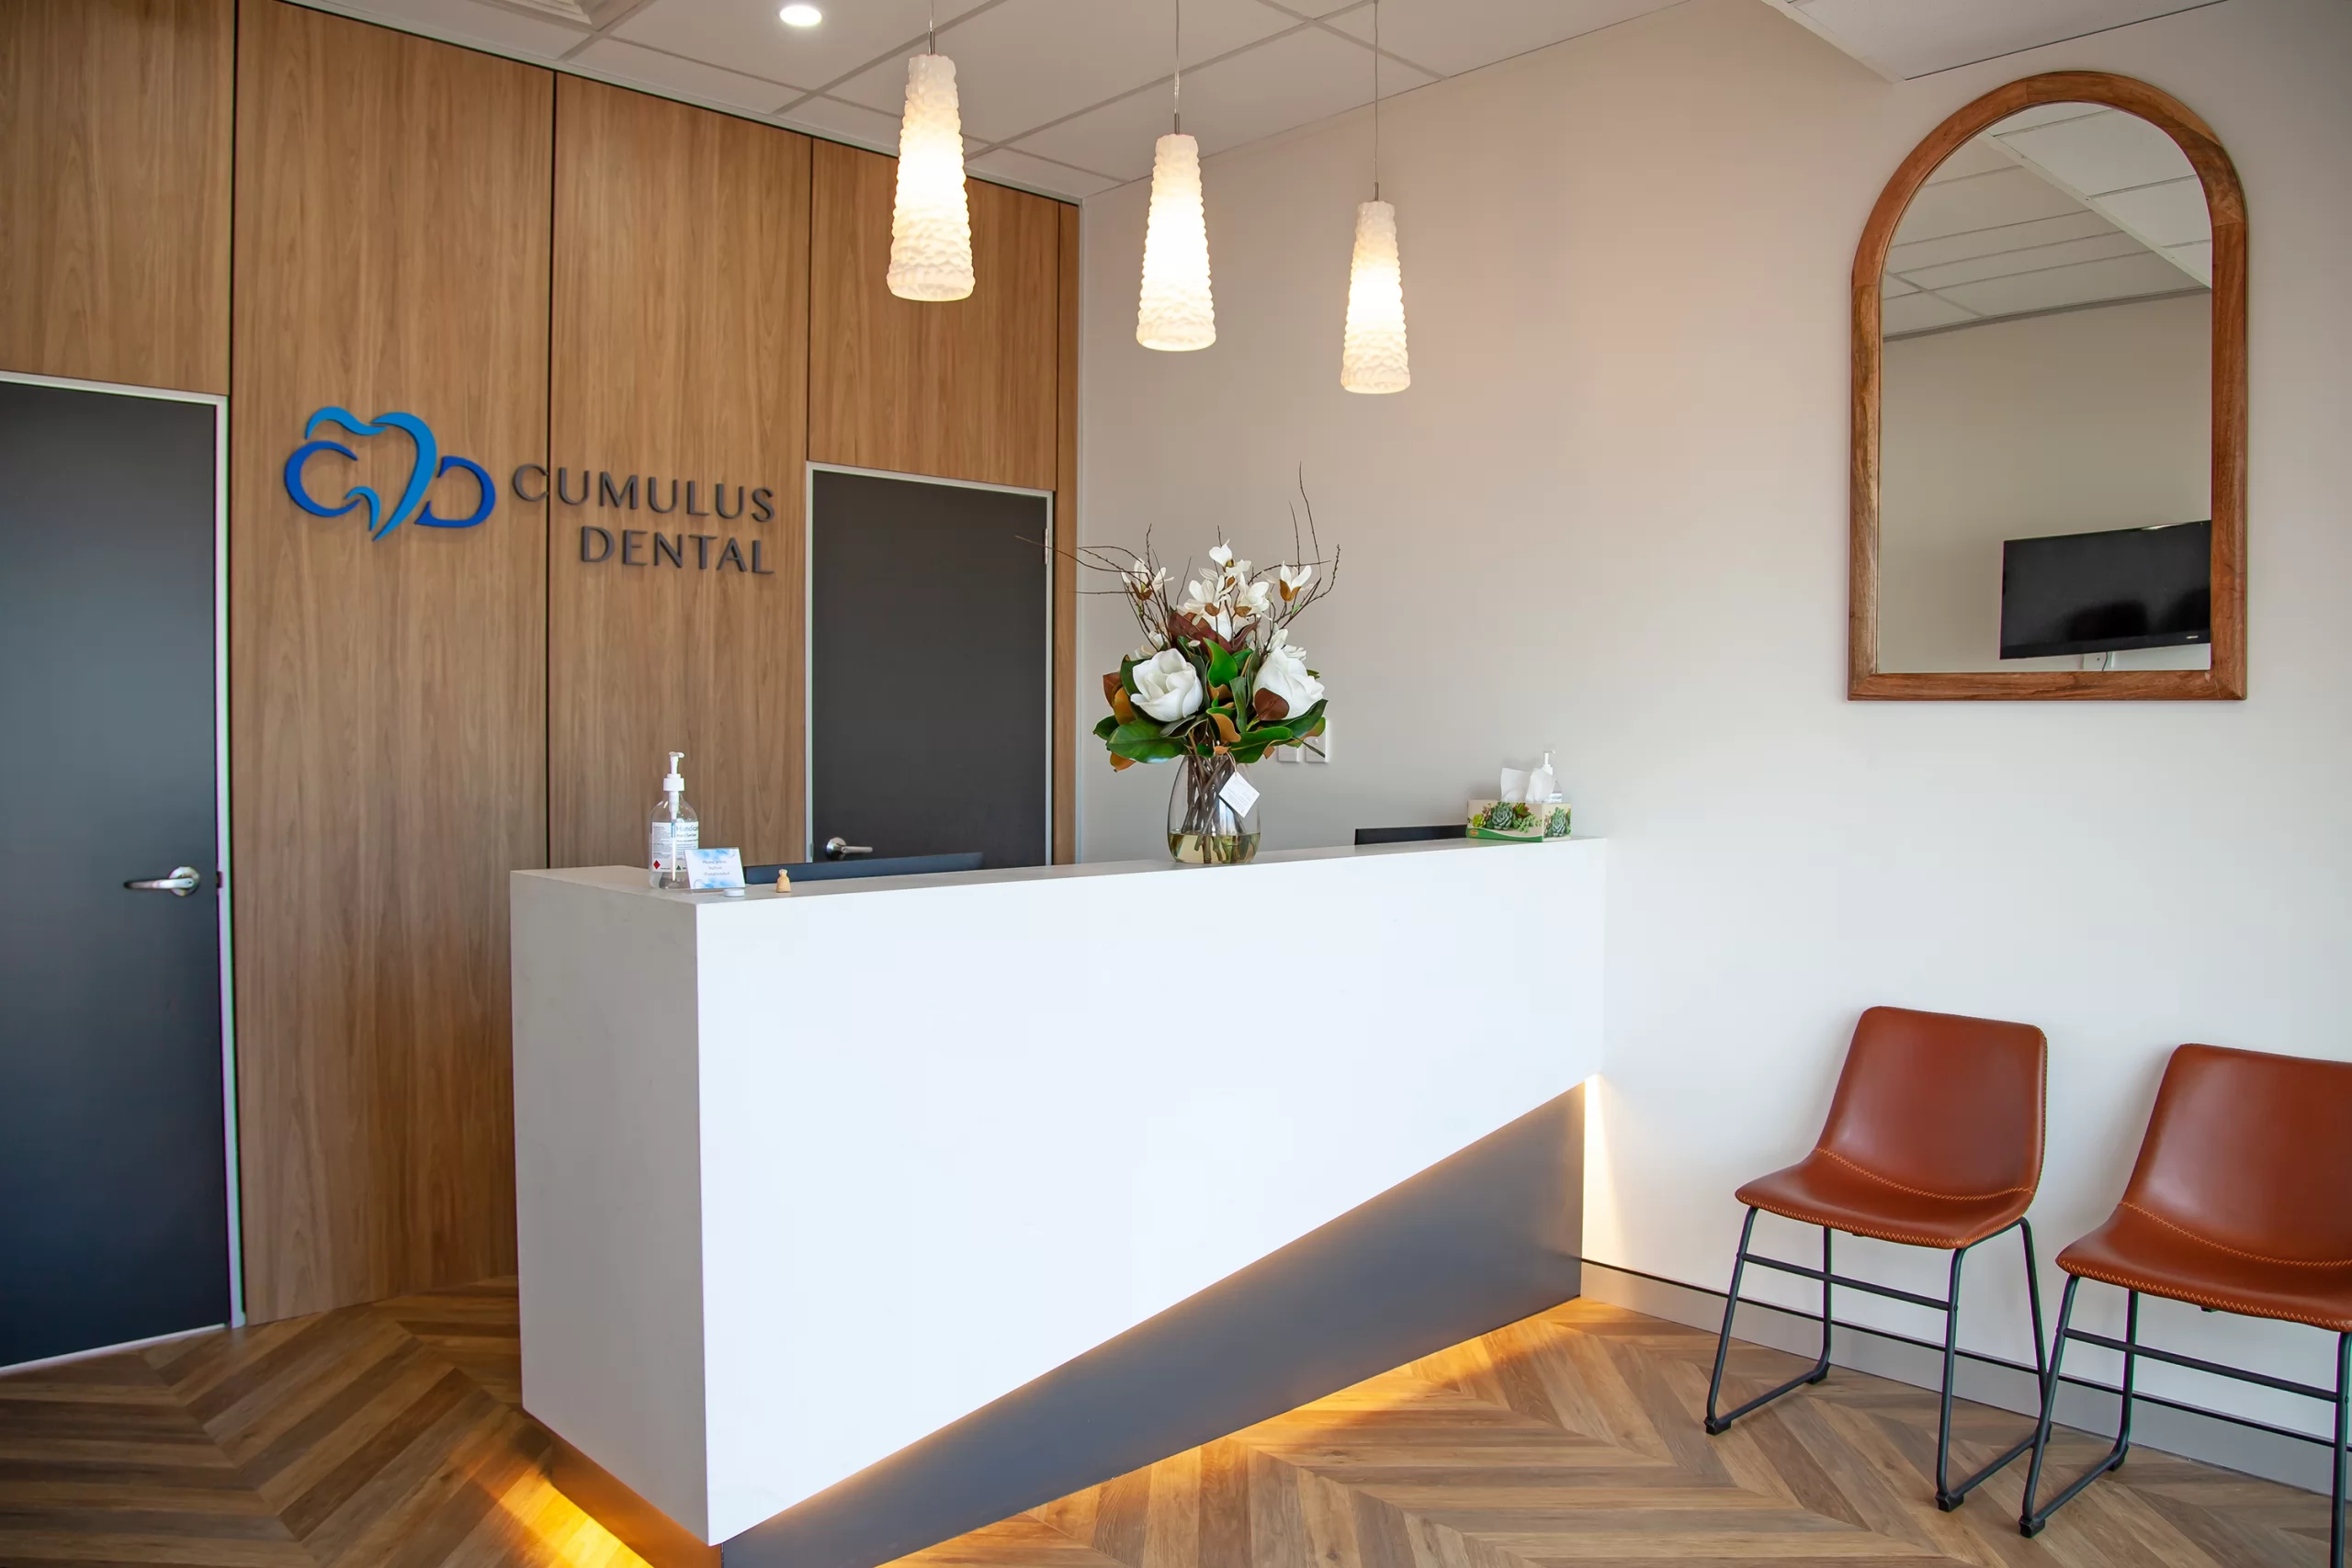 A photo of Cumulus Dental Reception Area